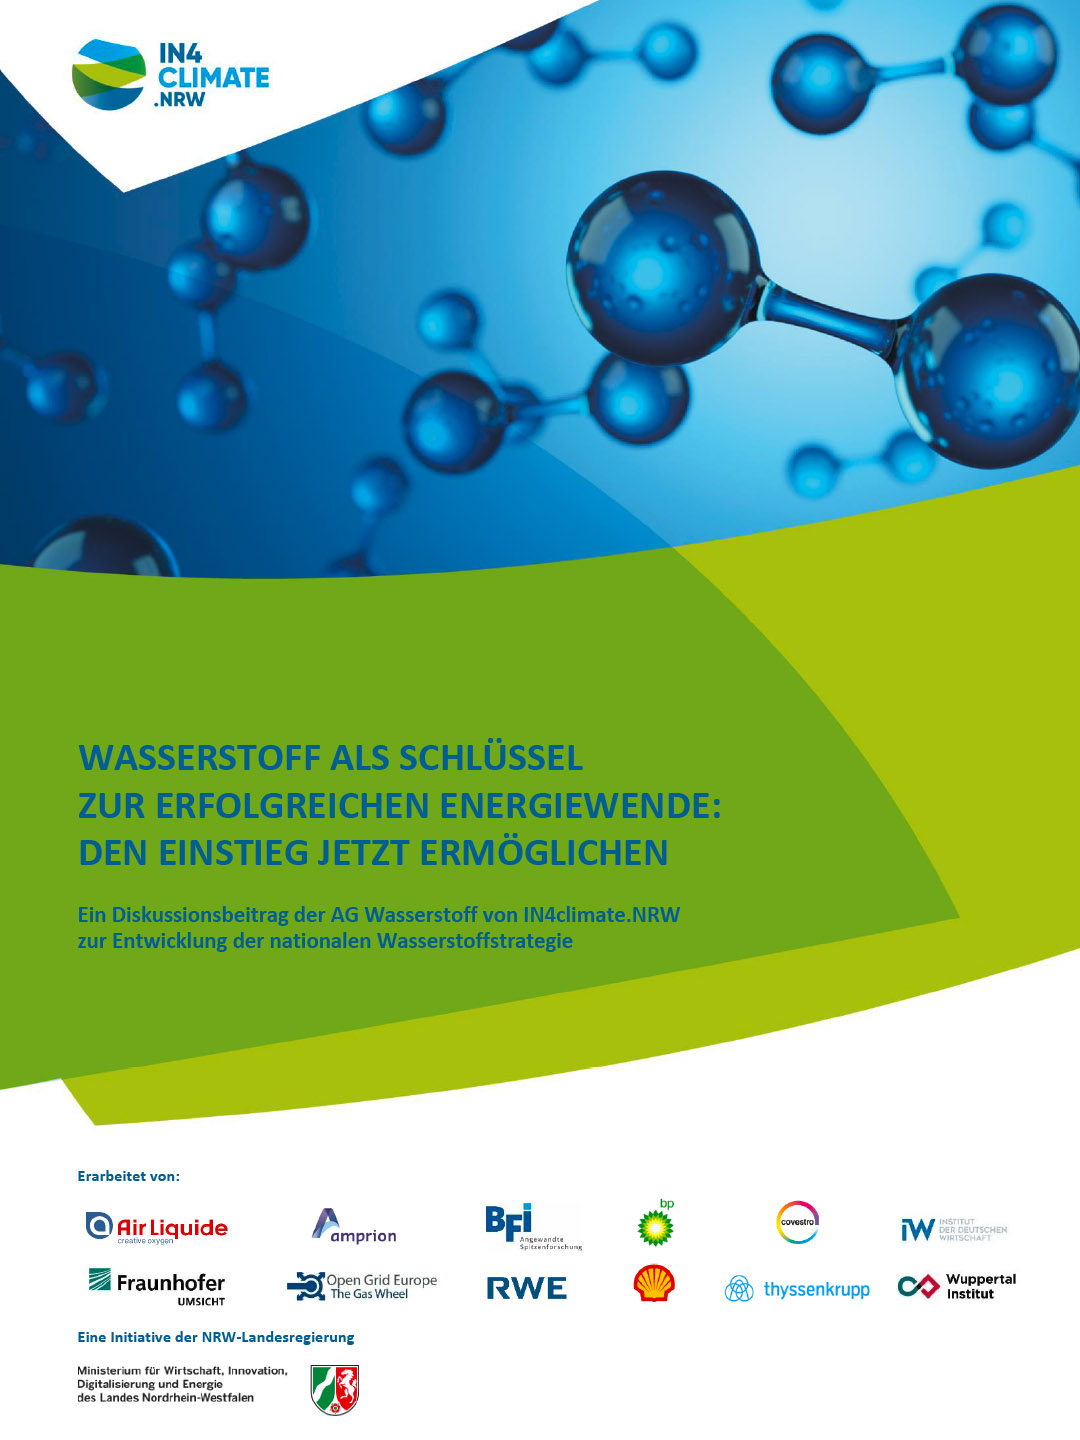 Diskussionsbeitrag der AG Wasserstoff von IN4climate.NRW zur Entwicklung der nationalen Wasserstoffstrategie.